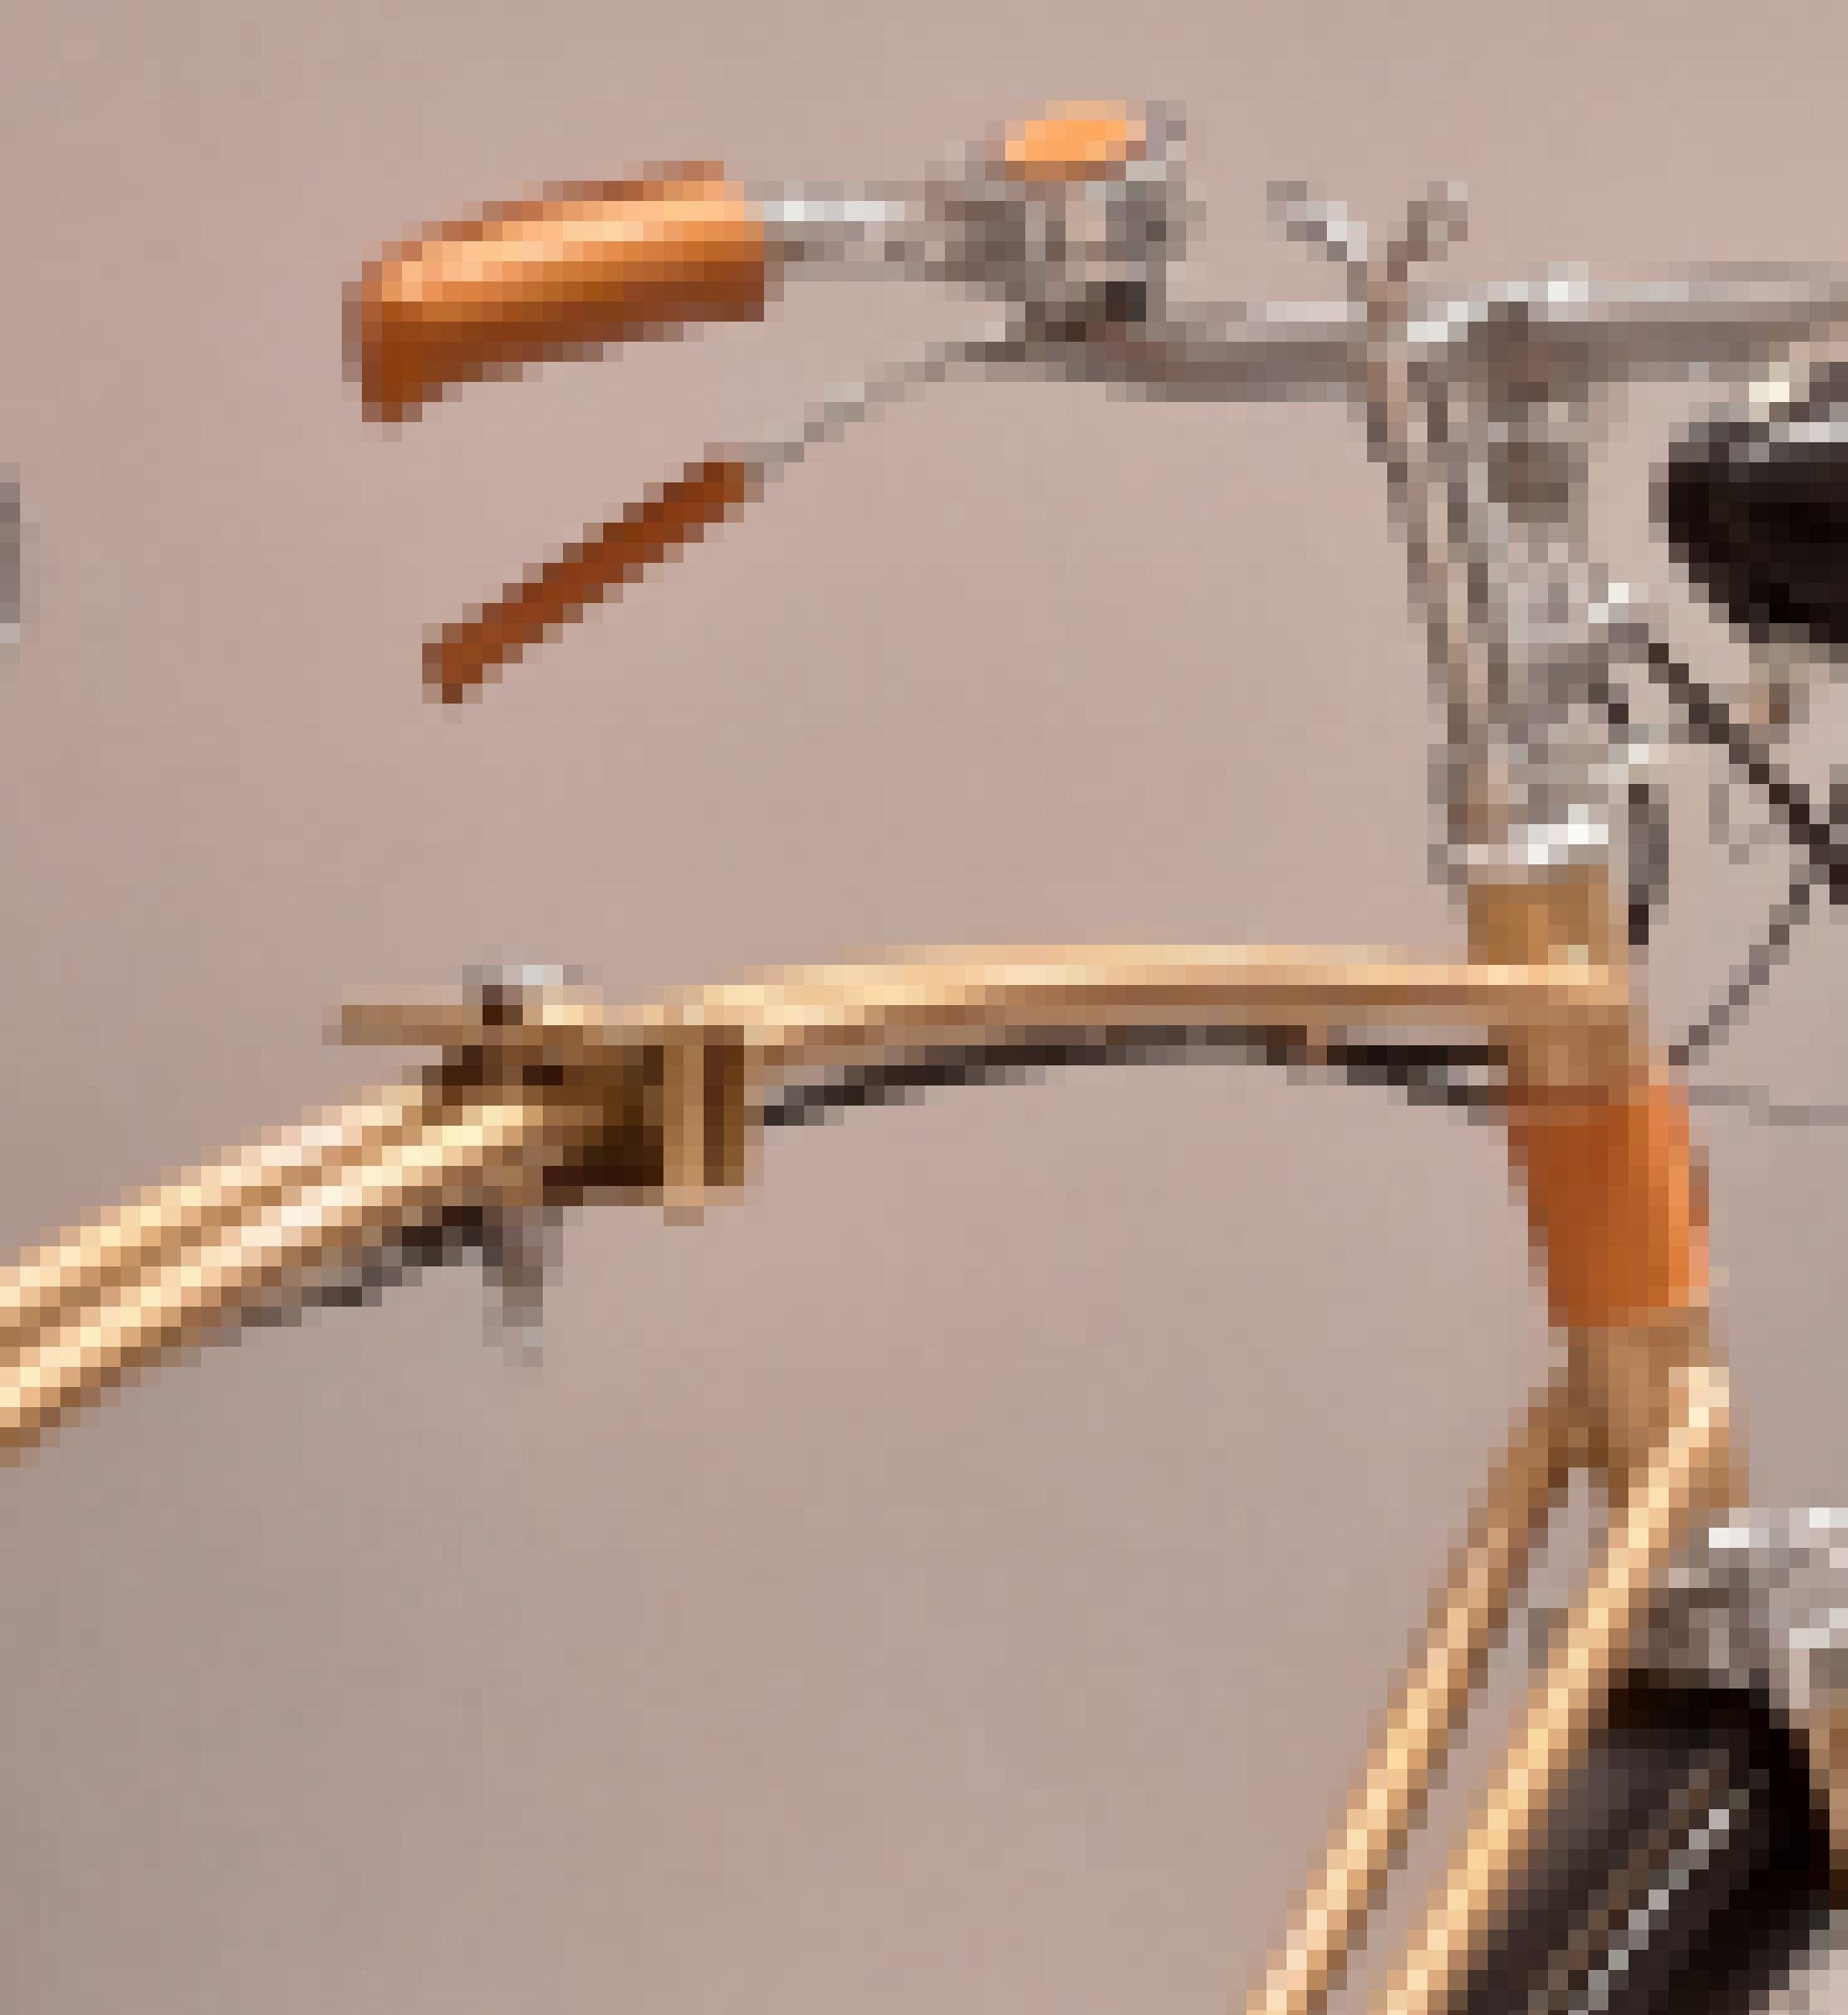 Detailaufnahme von Lenker und Querstange des goldglänzenden Fahrrads, die eine Flügelschraube zum Zusammenklappen trägt.